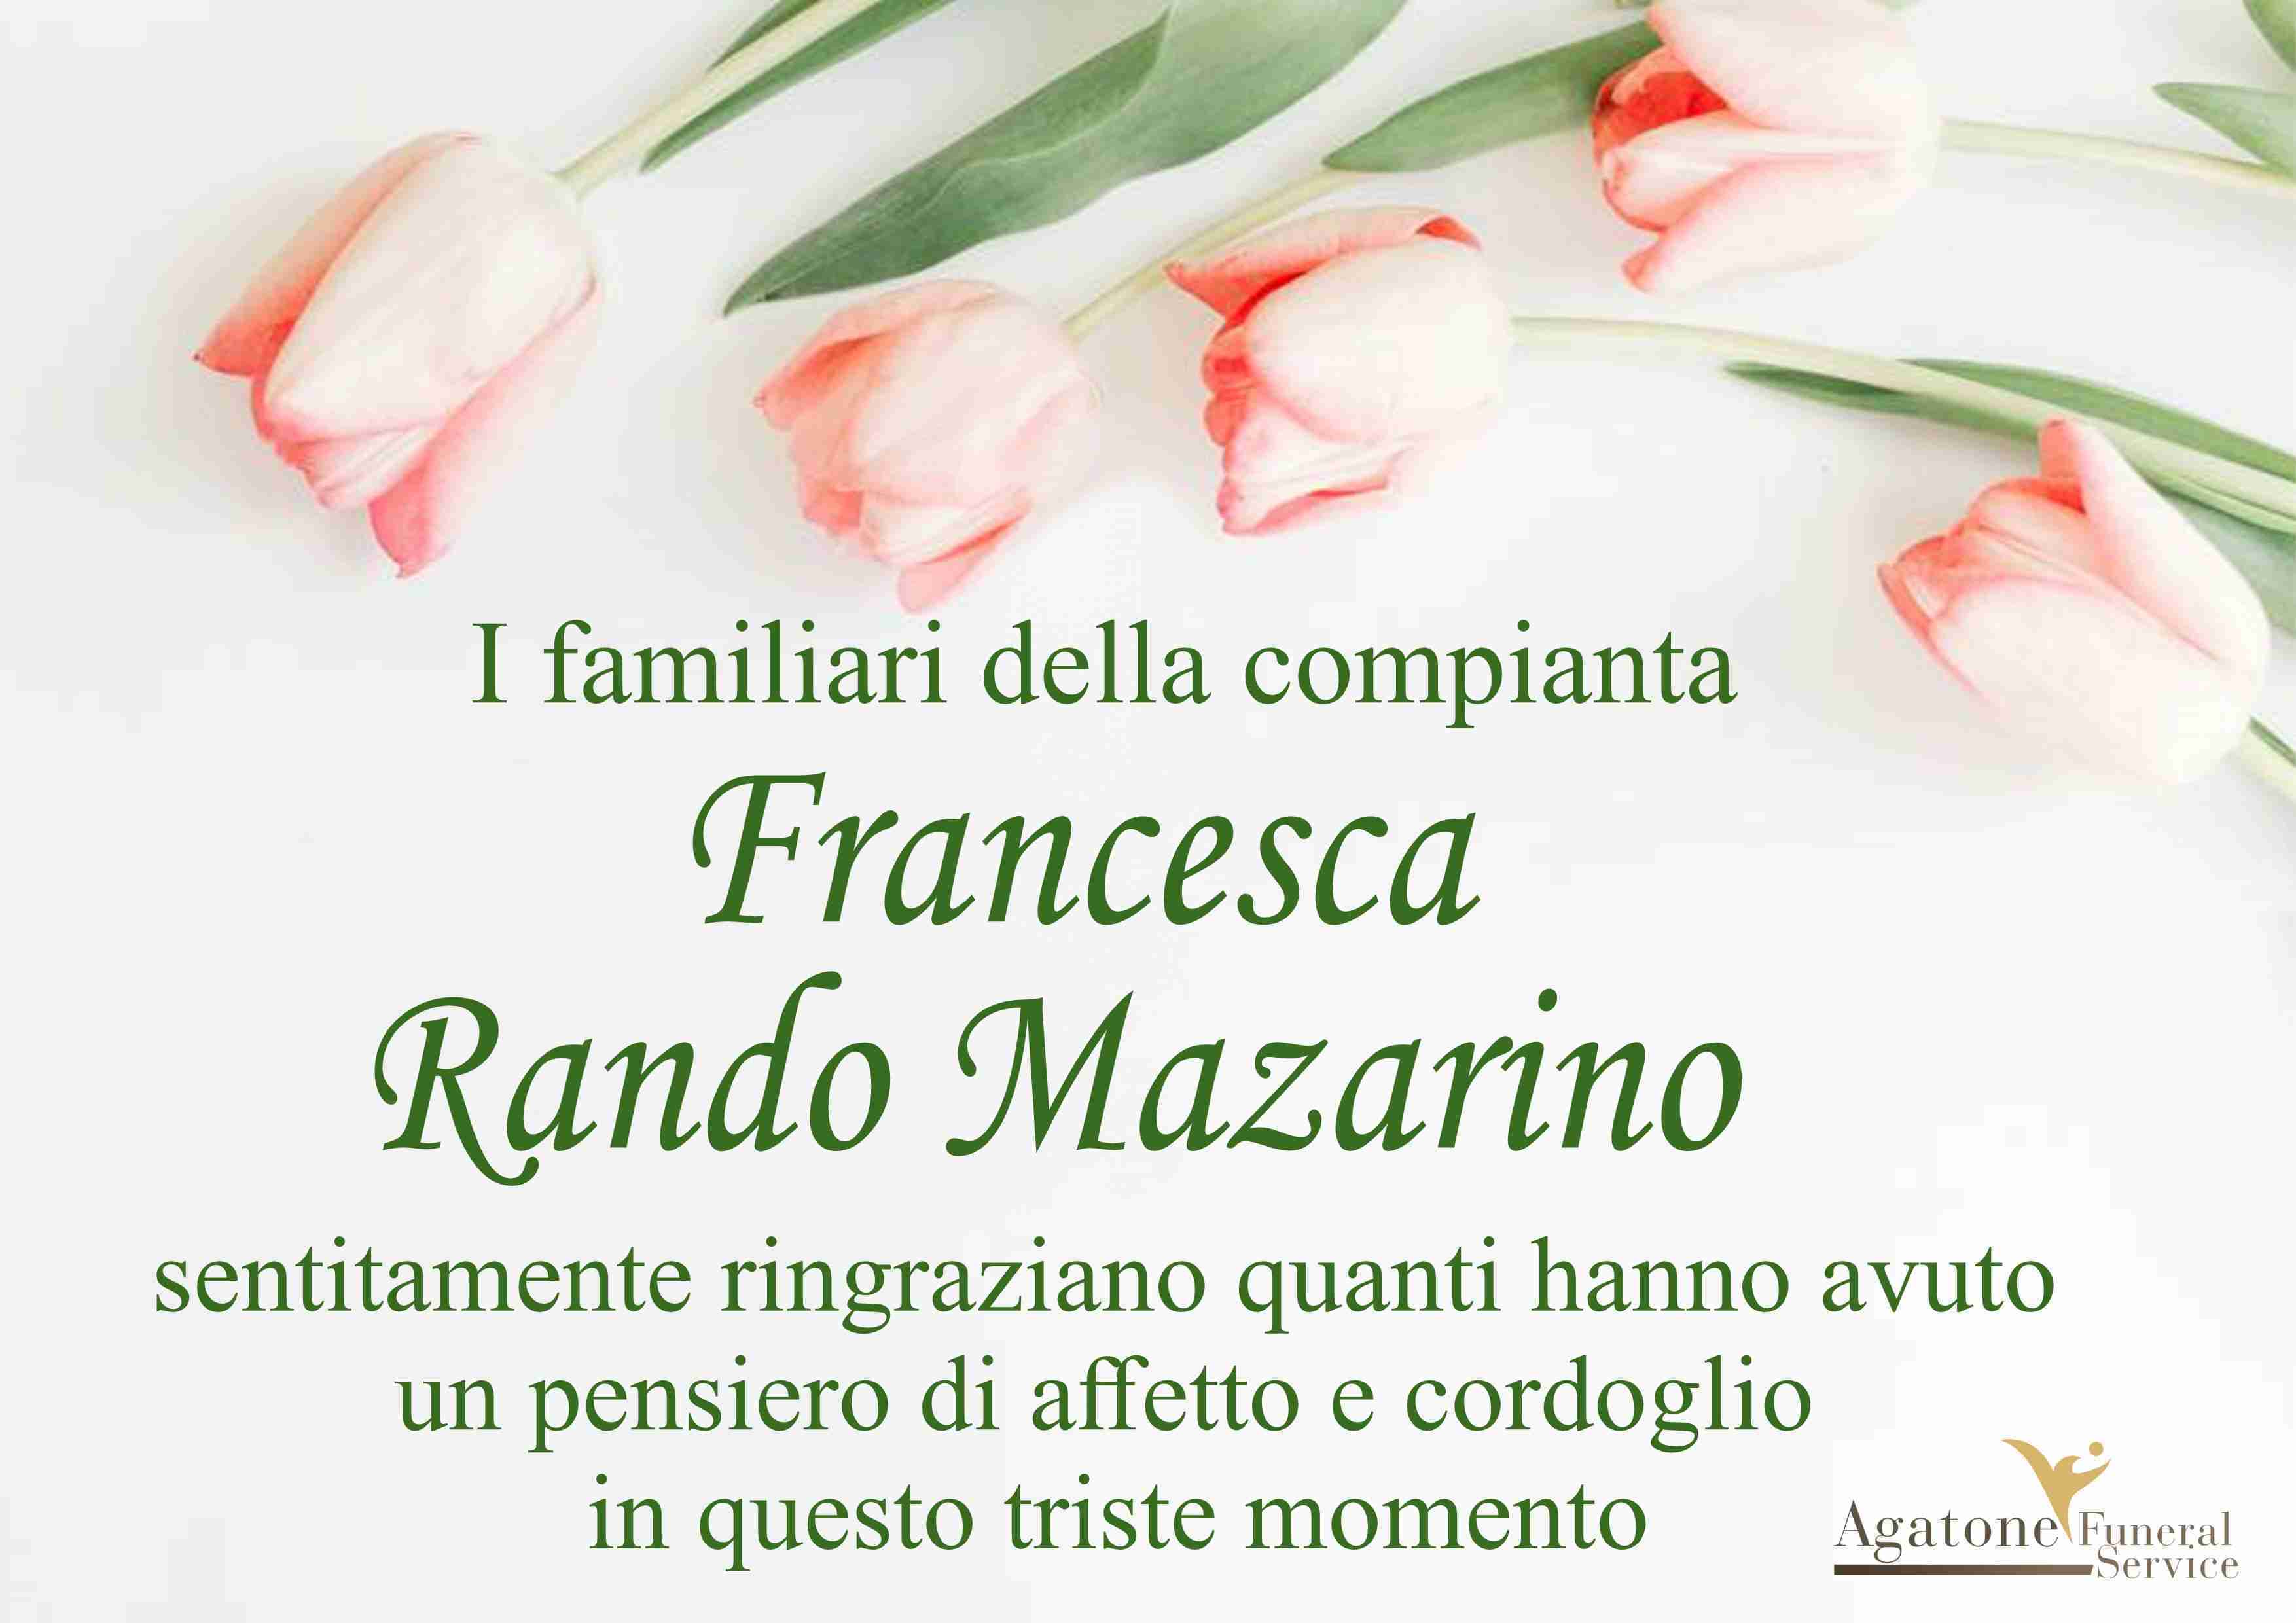 Francesca Rando Mazarino